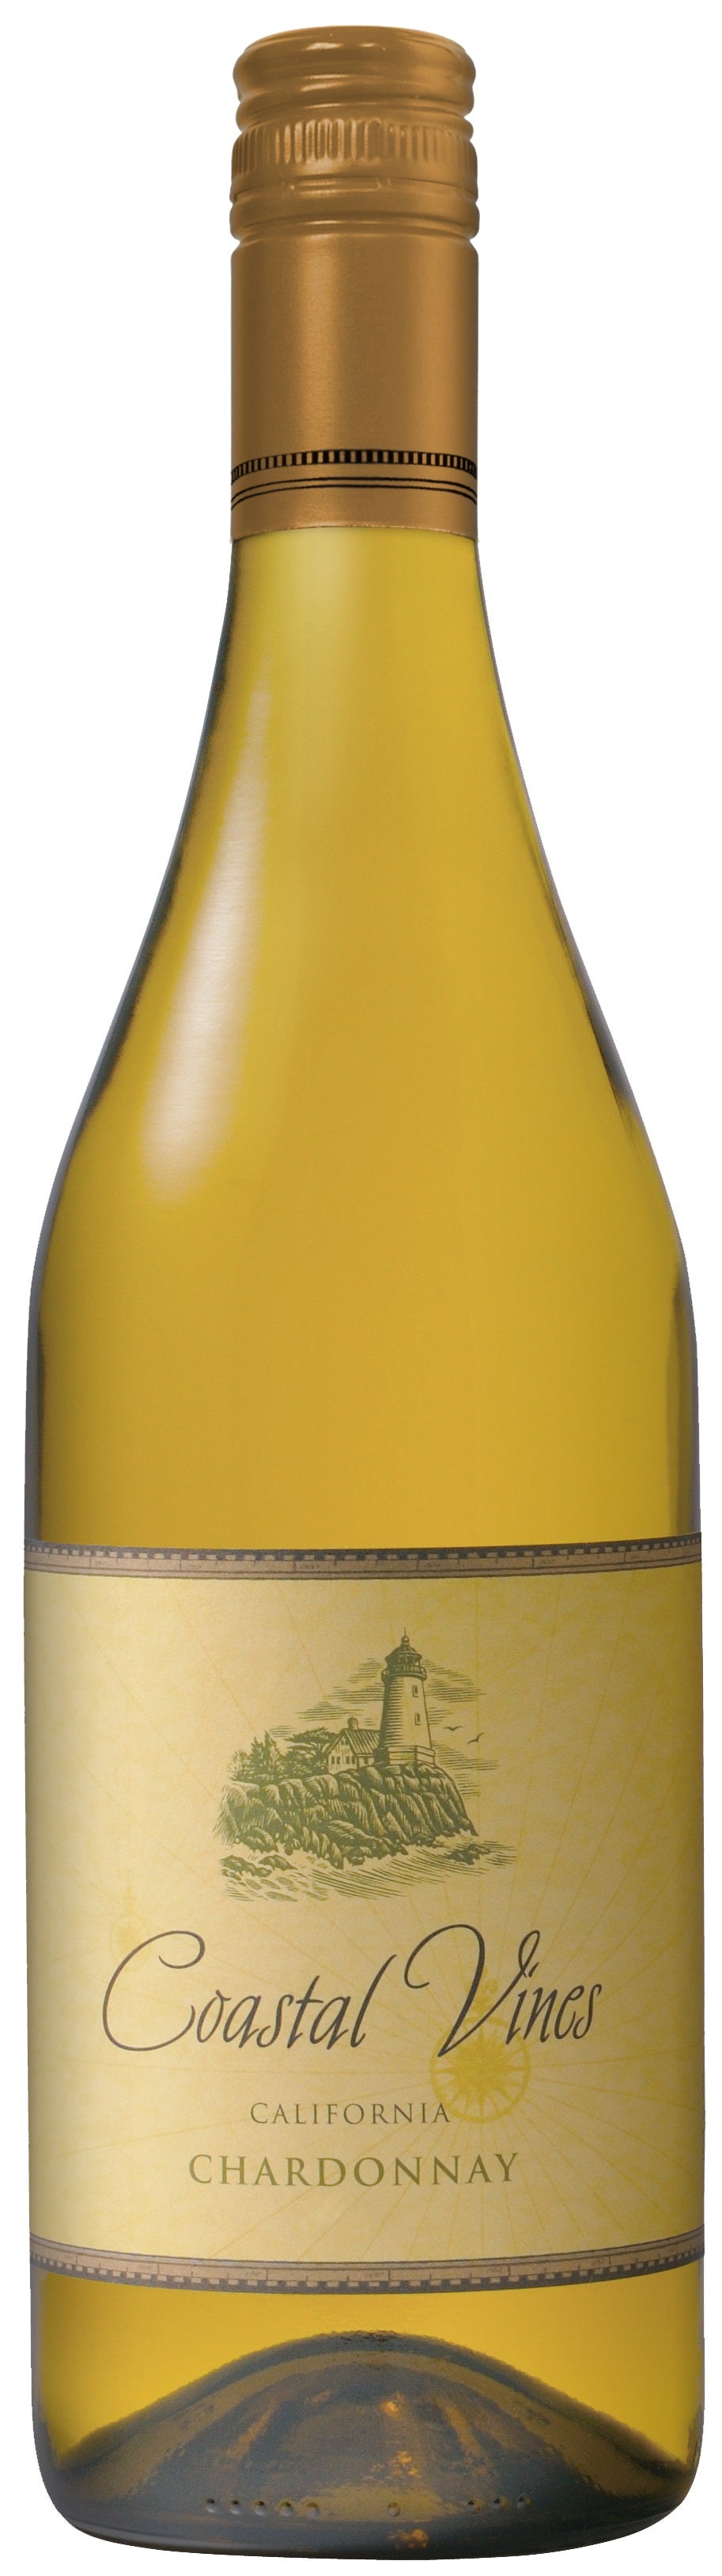 Coastal Vines Chardonnay 2017